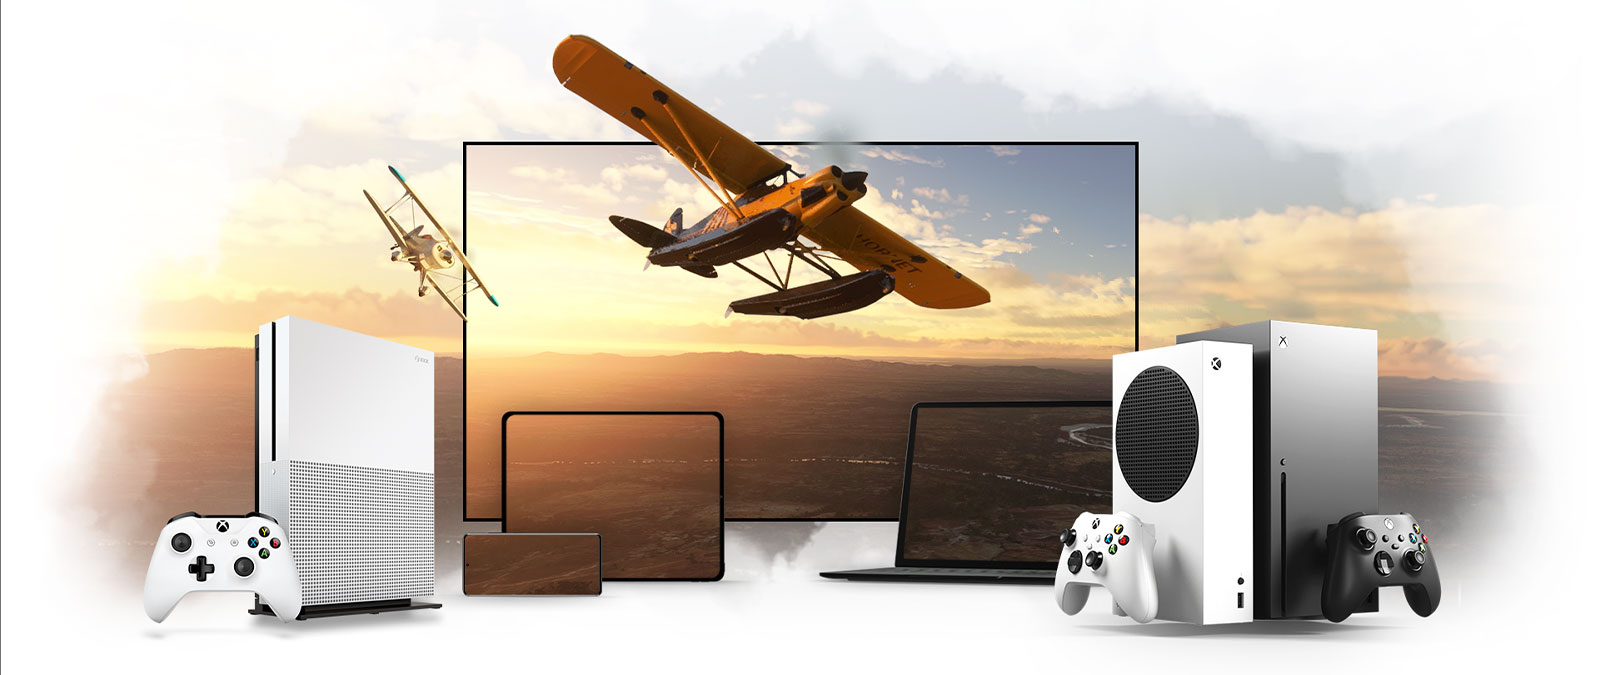 Ensemble d’appareils comprenant une télévision, une Xbox One et une Xbox Series X. Un avion à hélice s’éloigne d’un horizon éclairé par le soleil.